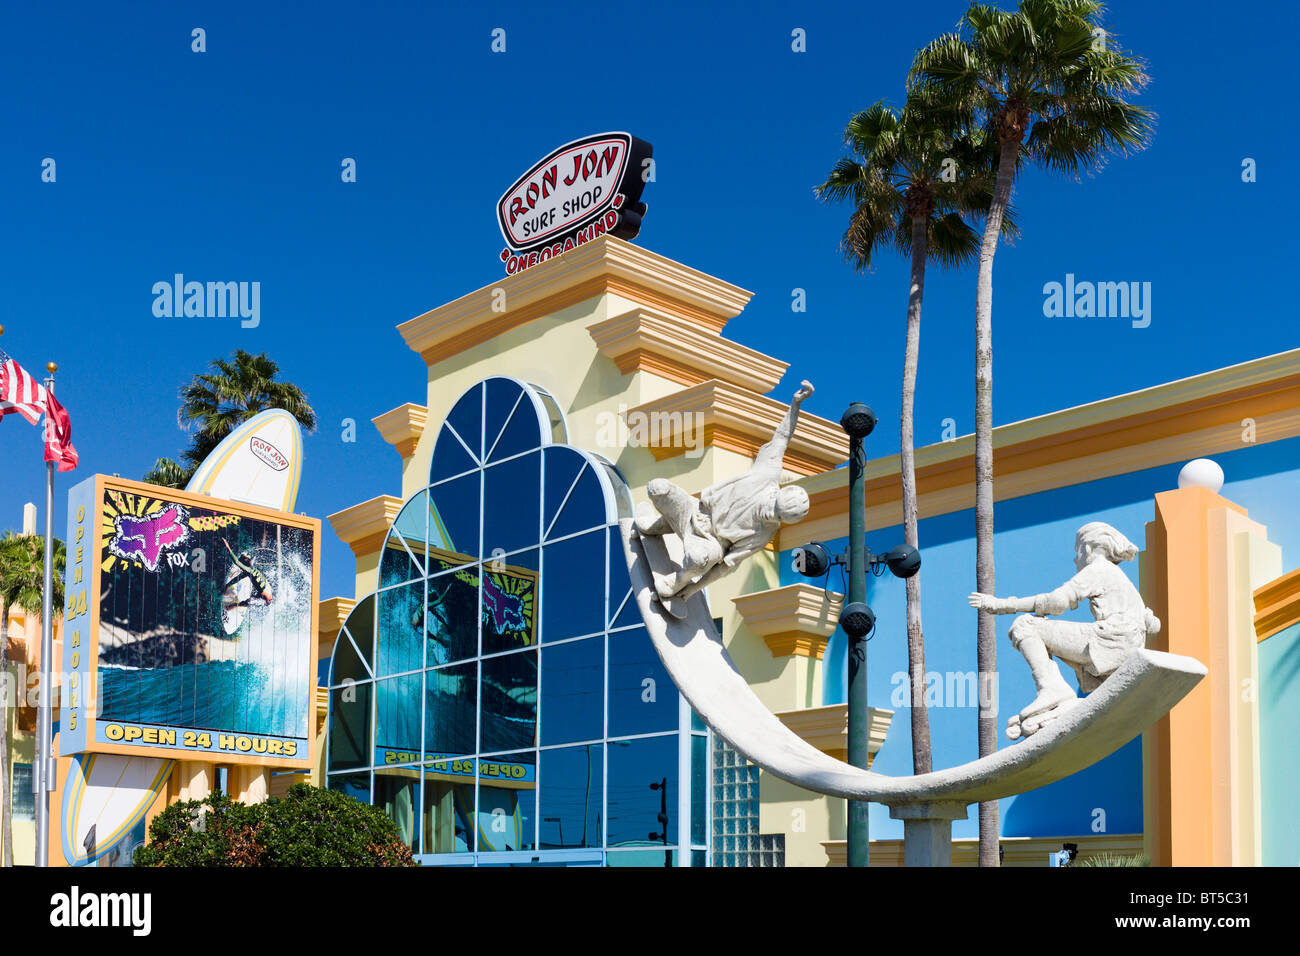 Ron Jon Surf Shop, Cocoa Beach, Space Coast, Florida, USA Stock Photo